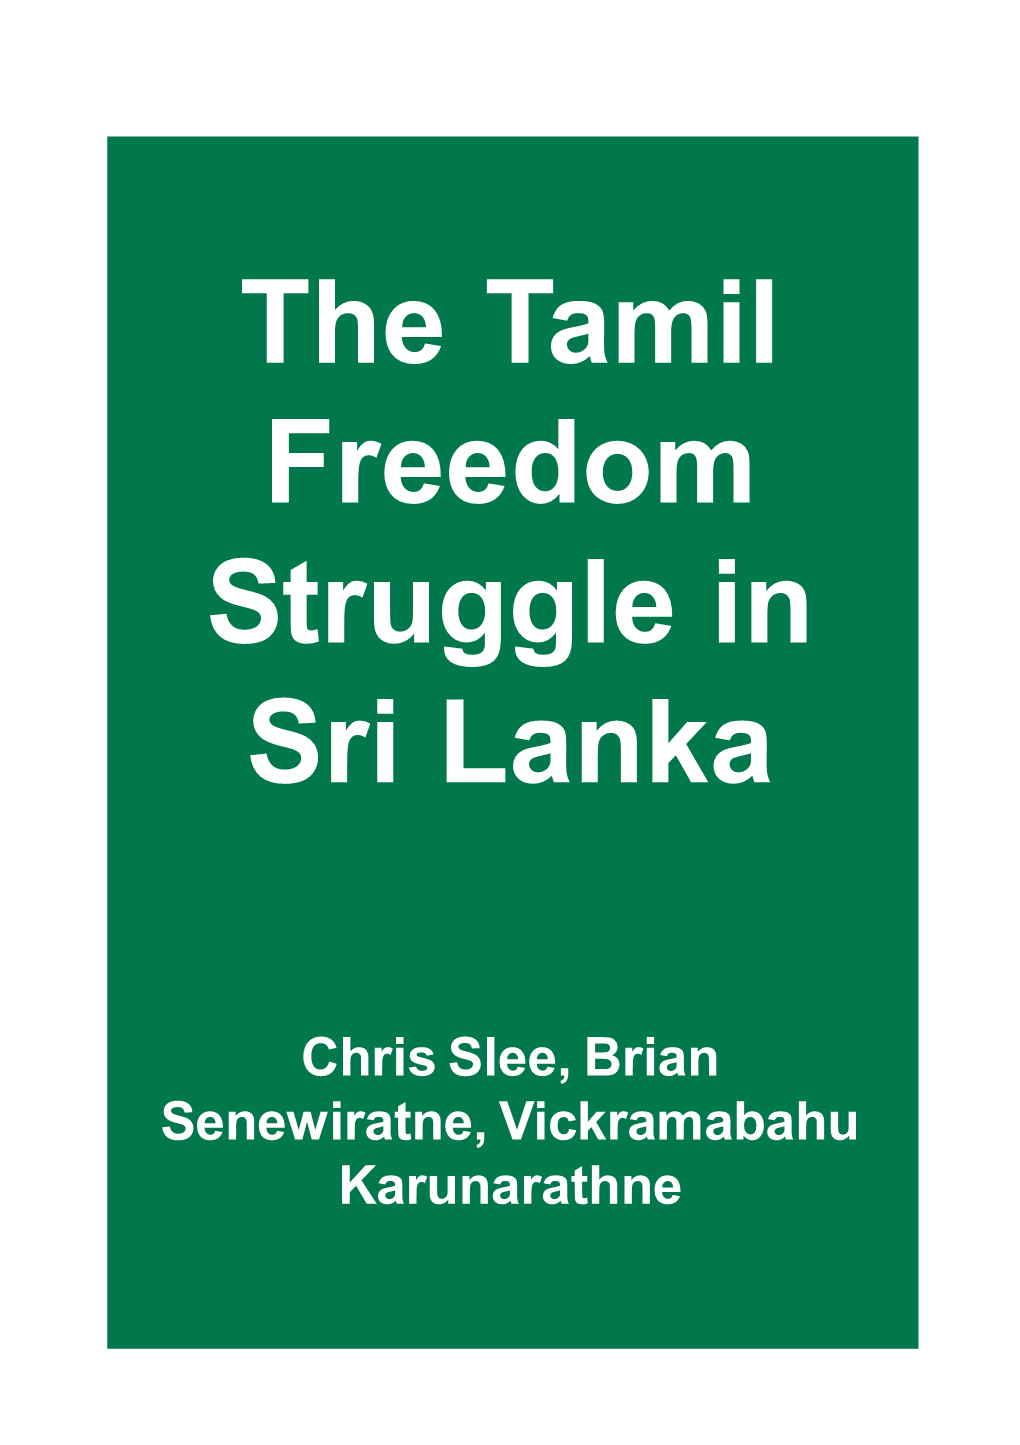 The Tamil Freedom Struggle in Sri Lanka